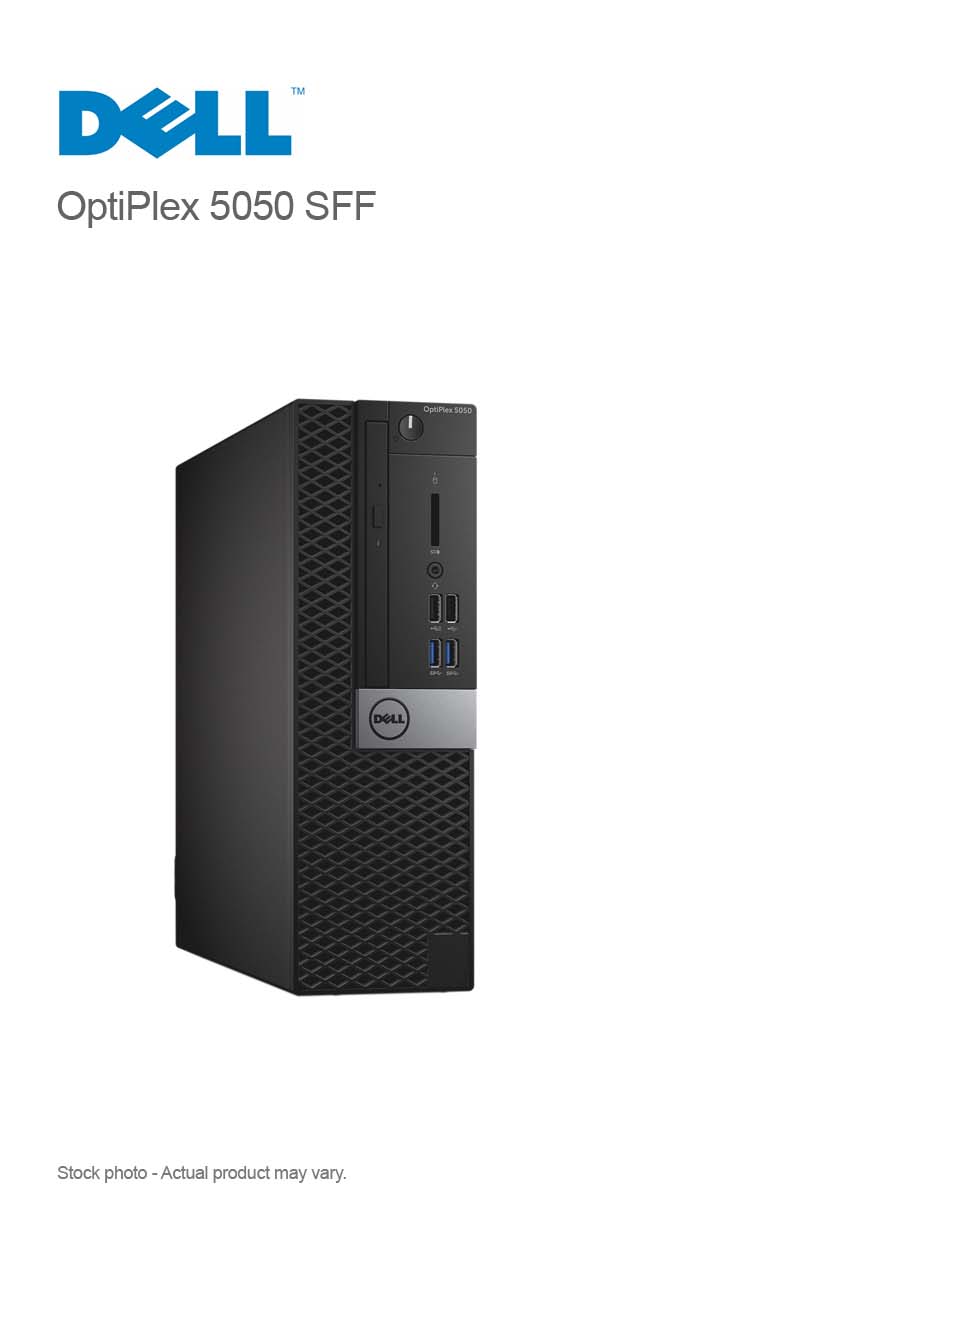 Dell OptiPlex 5050 SFF Core i7-6700 3.40GHz, 8GB, 128GB SSD, DVDRW